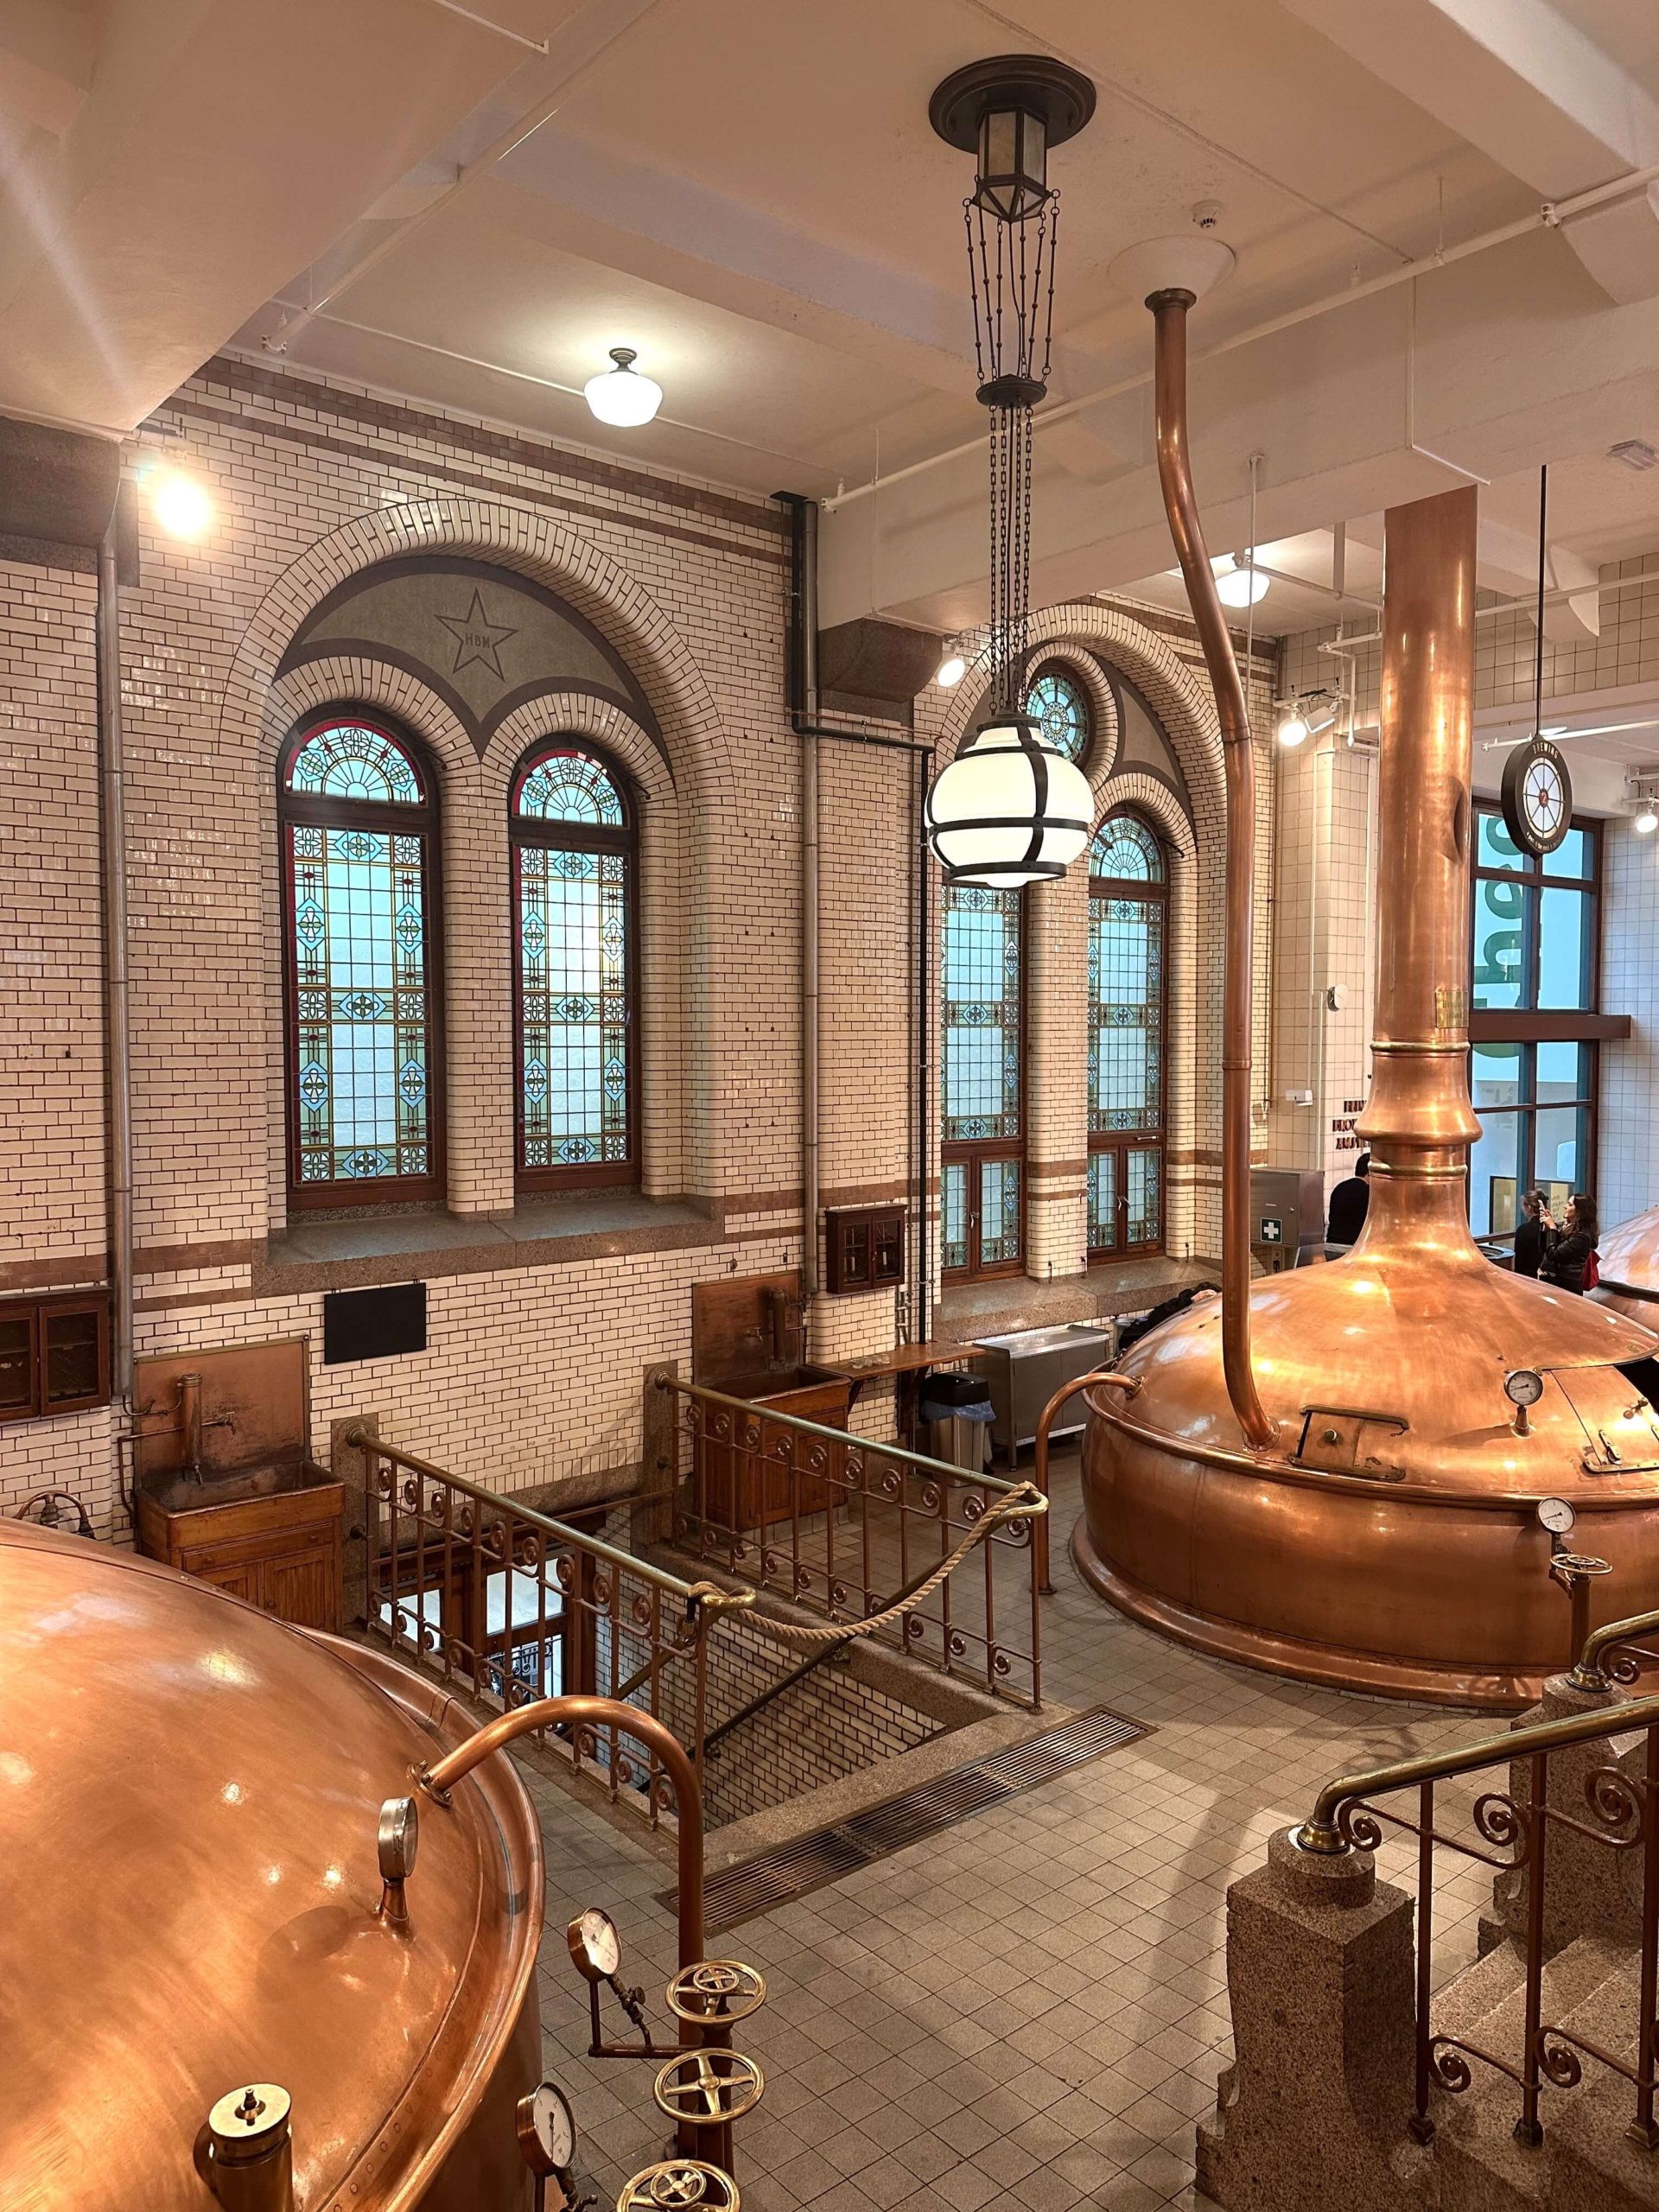 Vintage copper baths to make beer in the Heineken Experience.